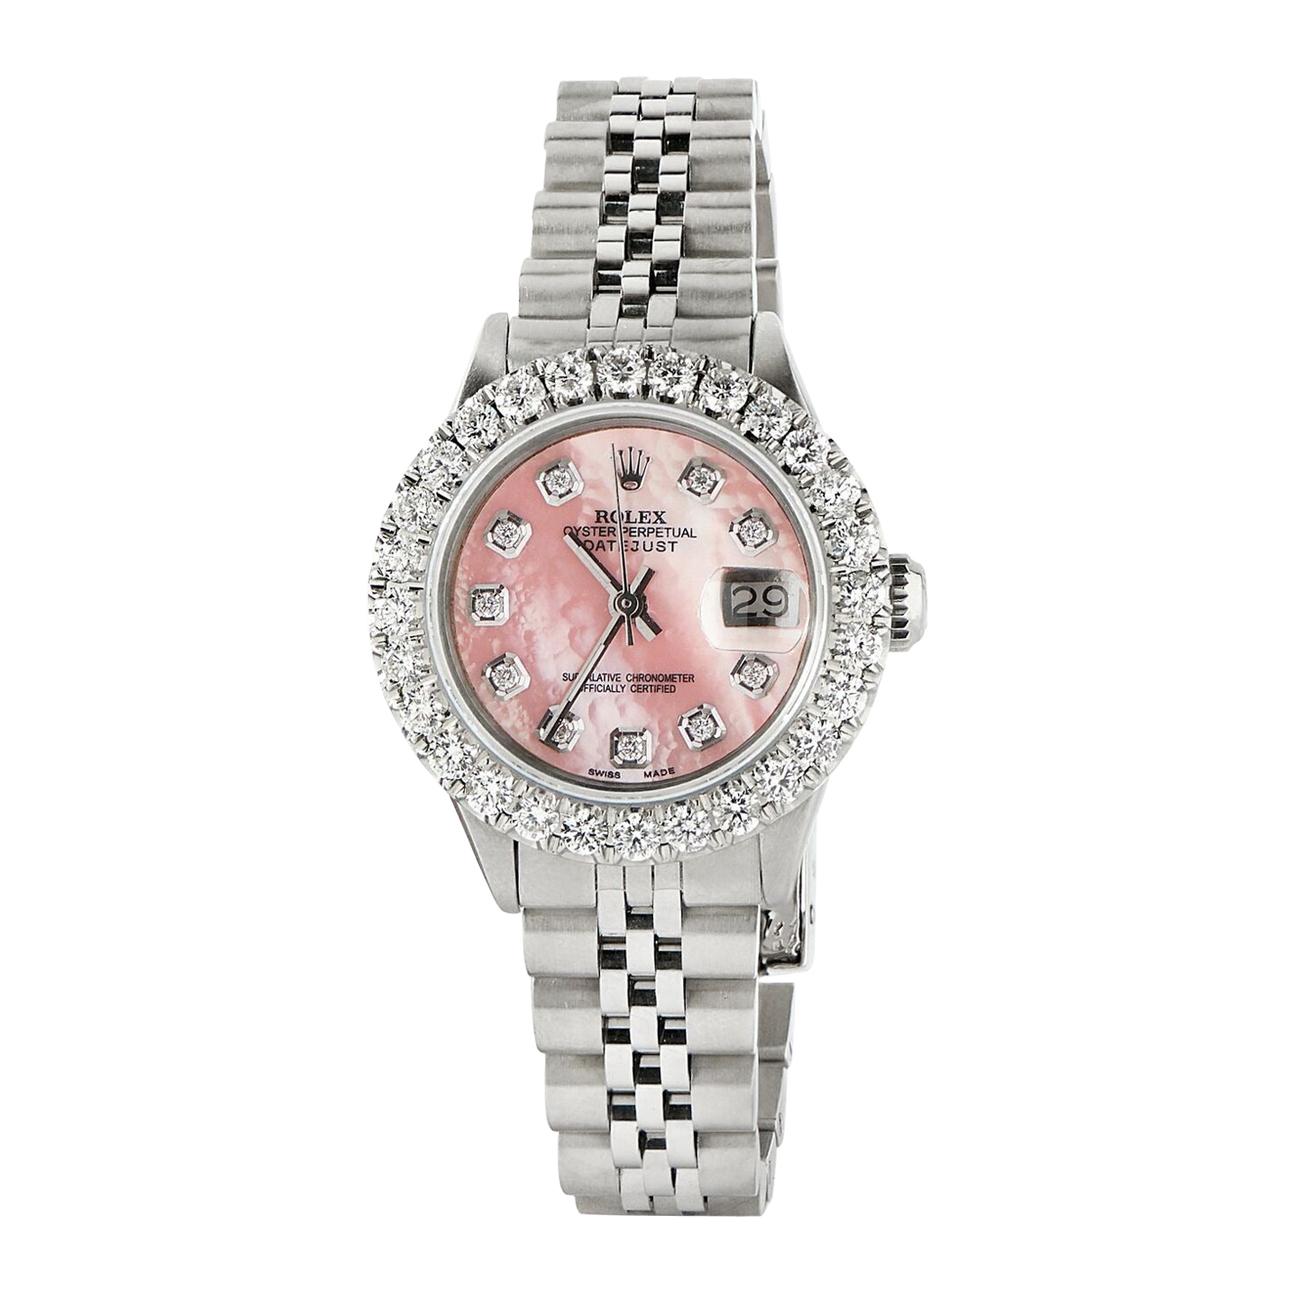 Rolex Datejust Steel Jubilee Watch 2 Carat Diamond Bezel / Vibrant Pink Dial For Sale